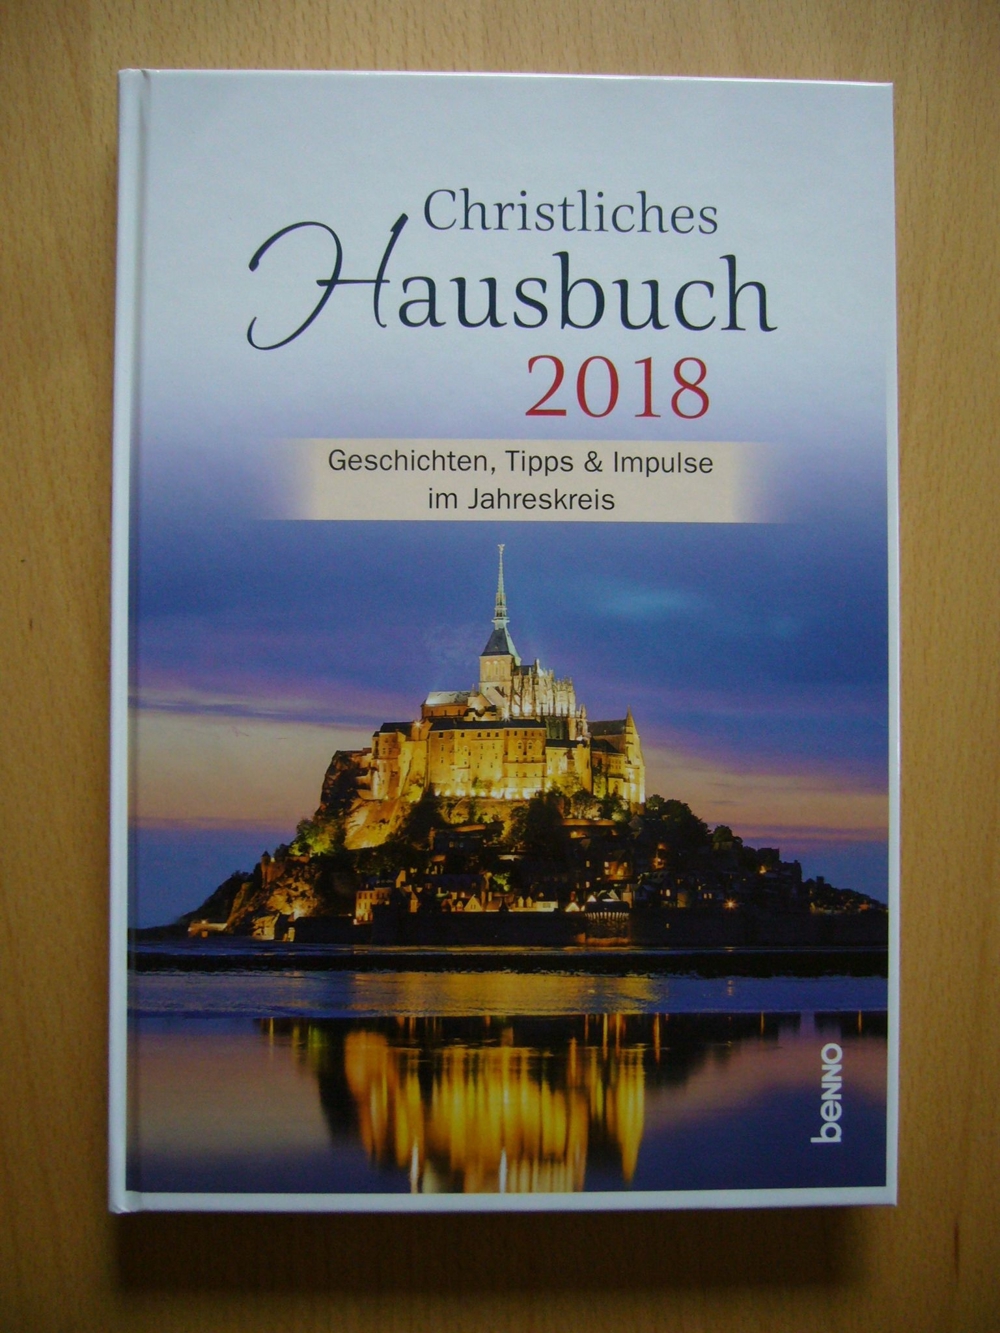 Kalender / Buchkalender: Christliches Hausbuch 2018 - Geschichten, Tipps & Impulse im Jahreskreis